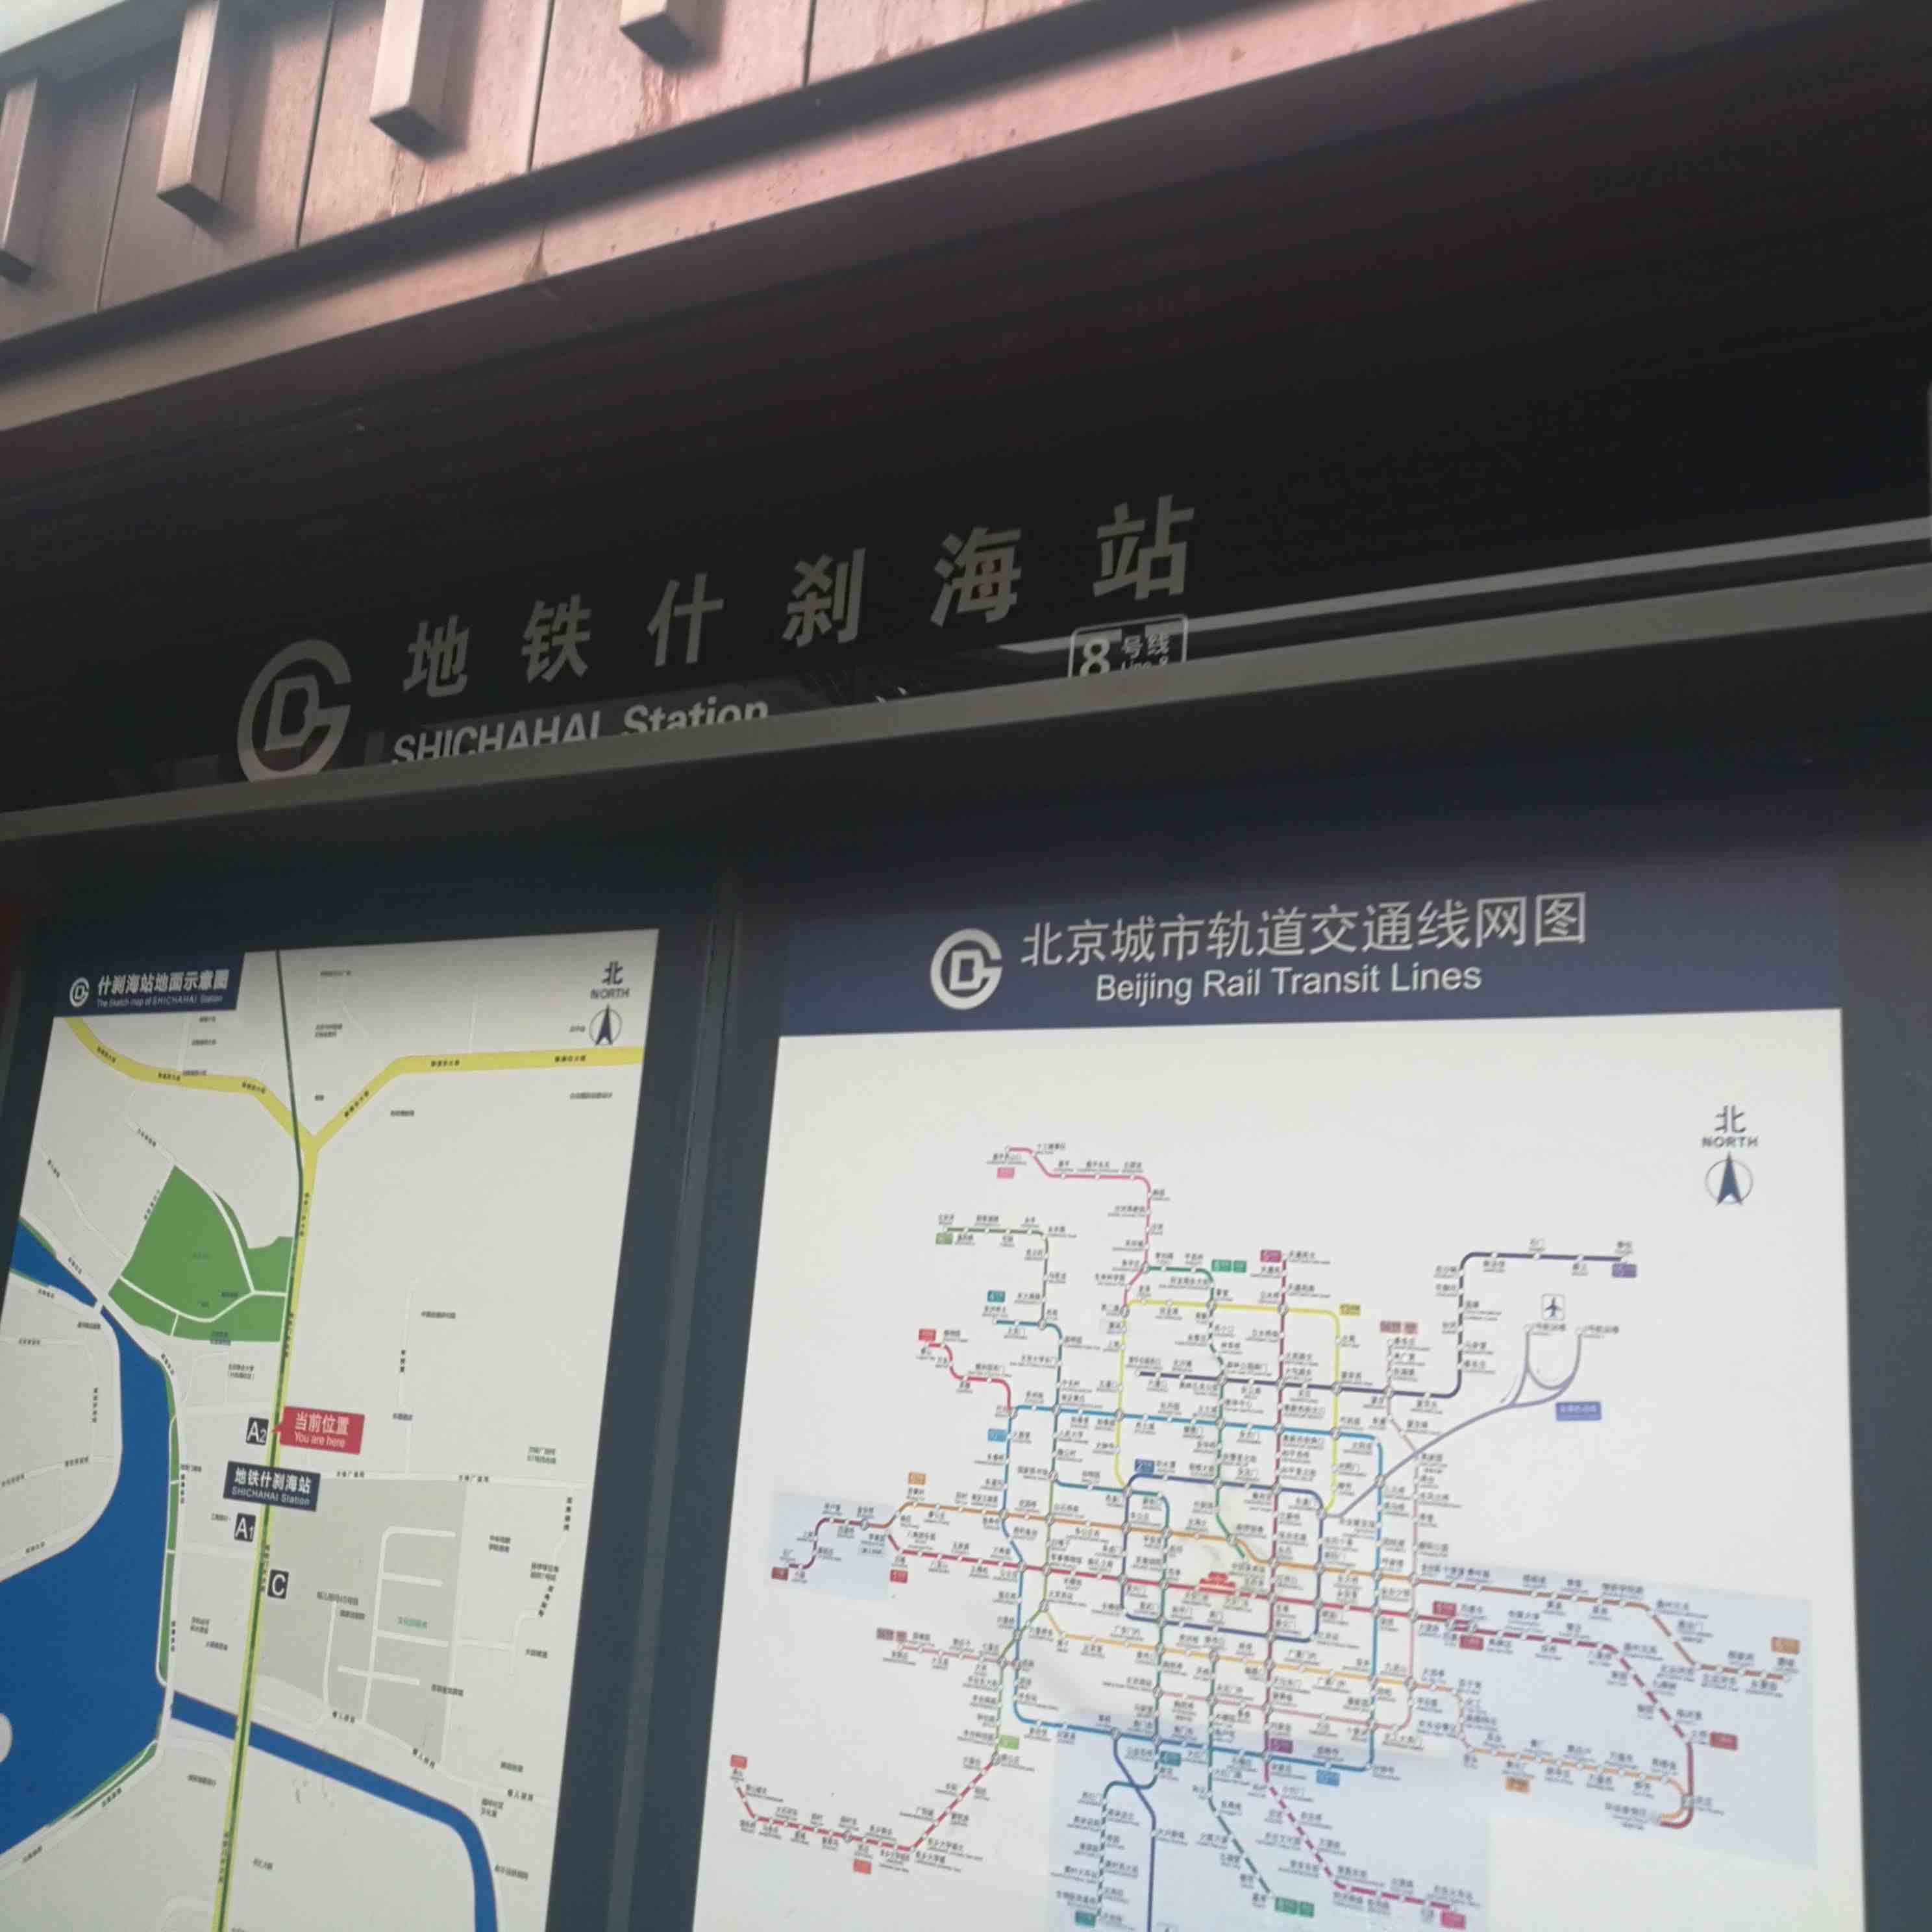 北京地安门百货商场计划开业已经两年，但直到2020年五一仍未开业